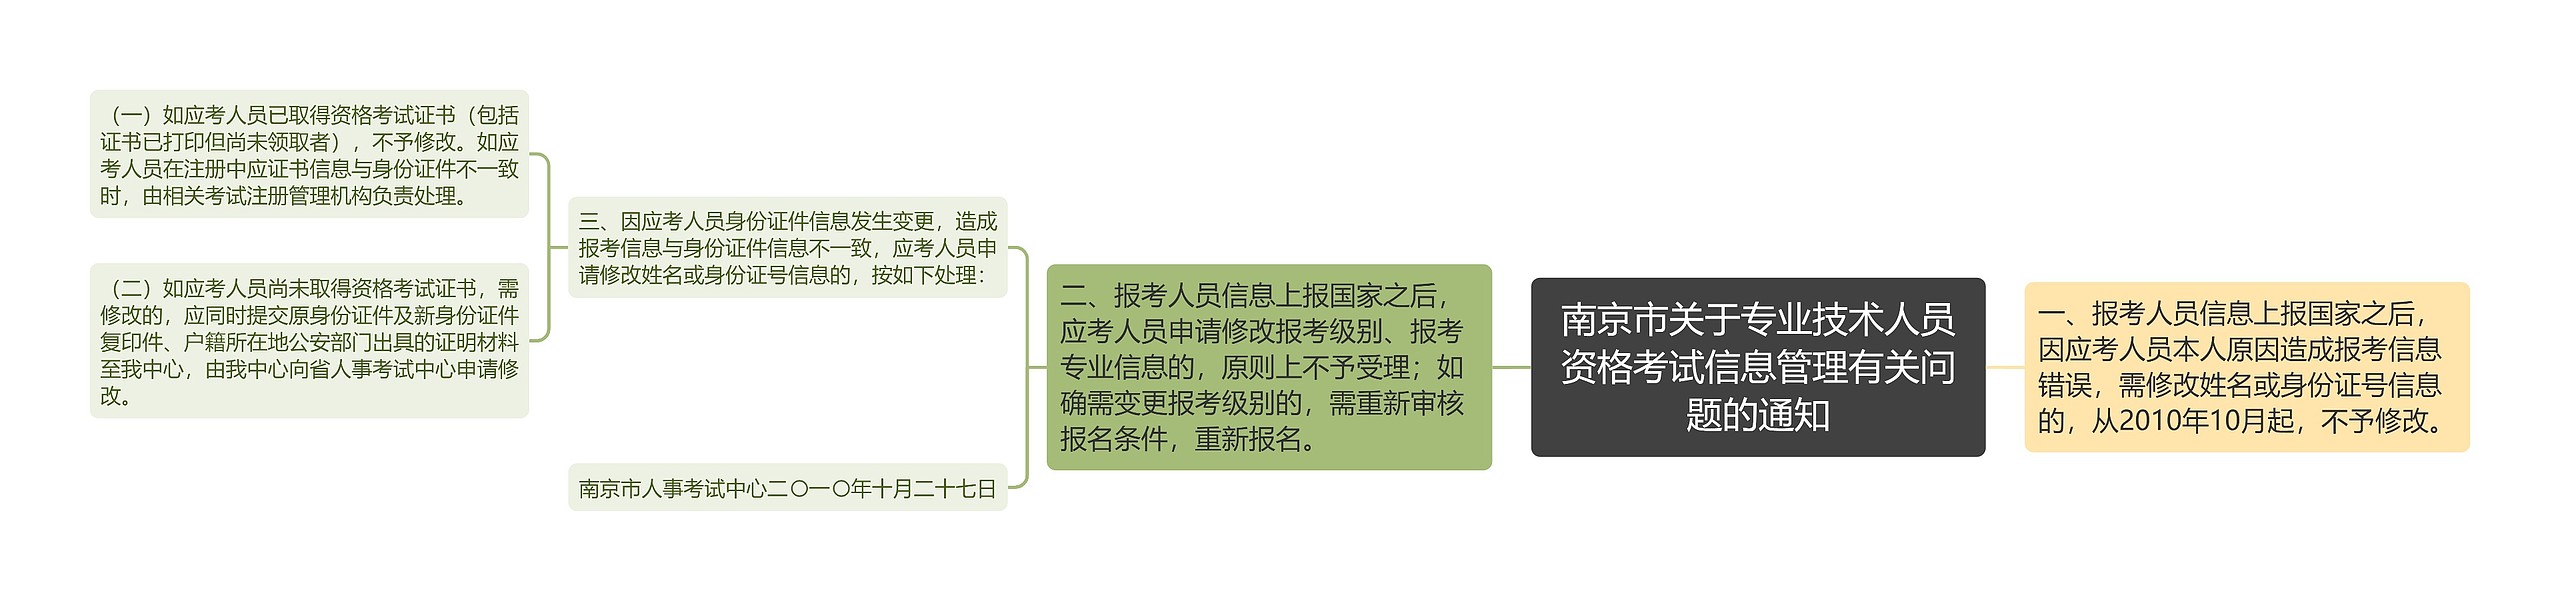 南京市关于专业技术人员资格考试信息管理有关问题的通知